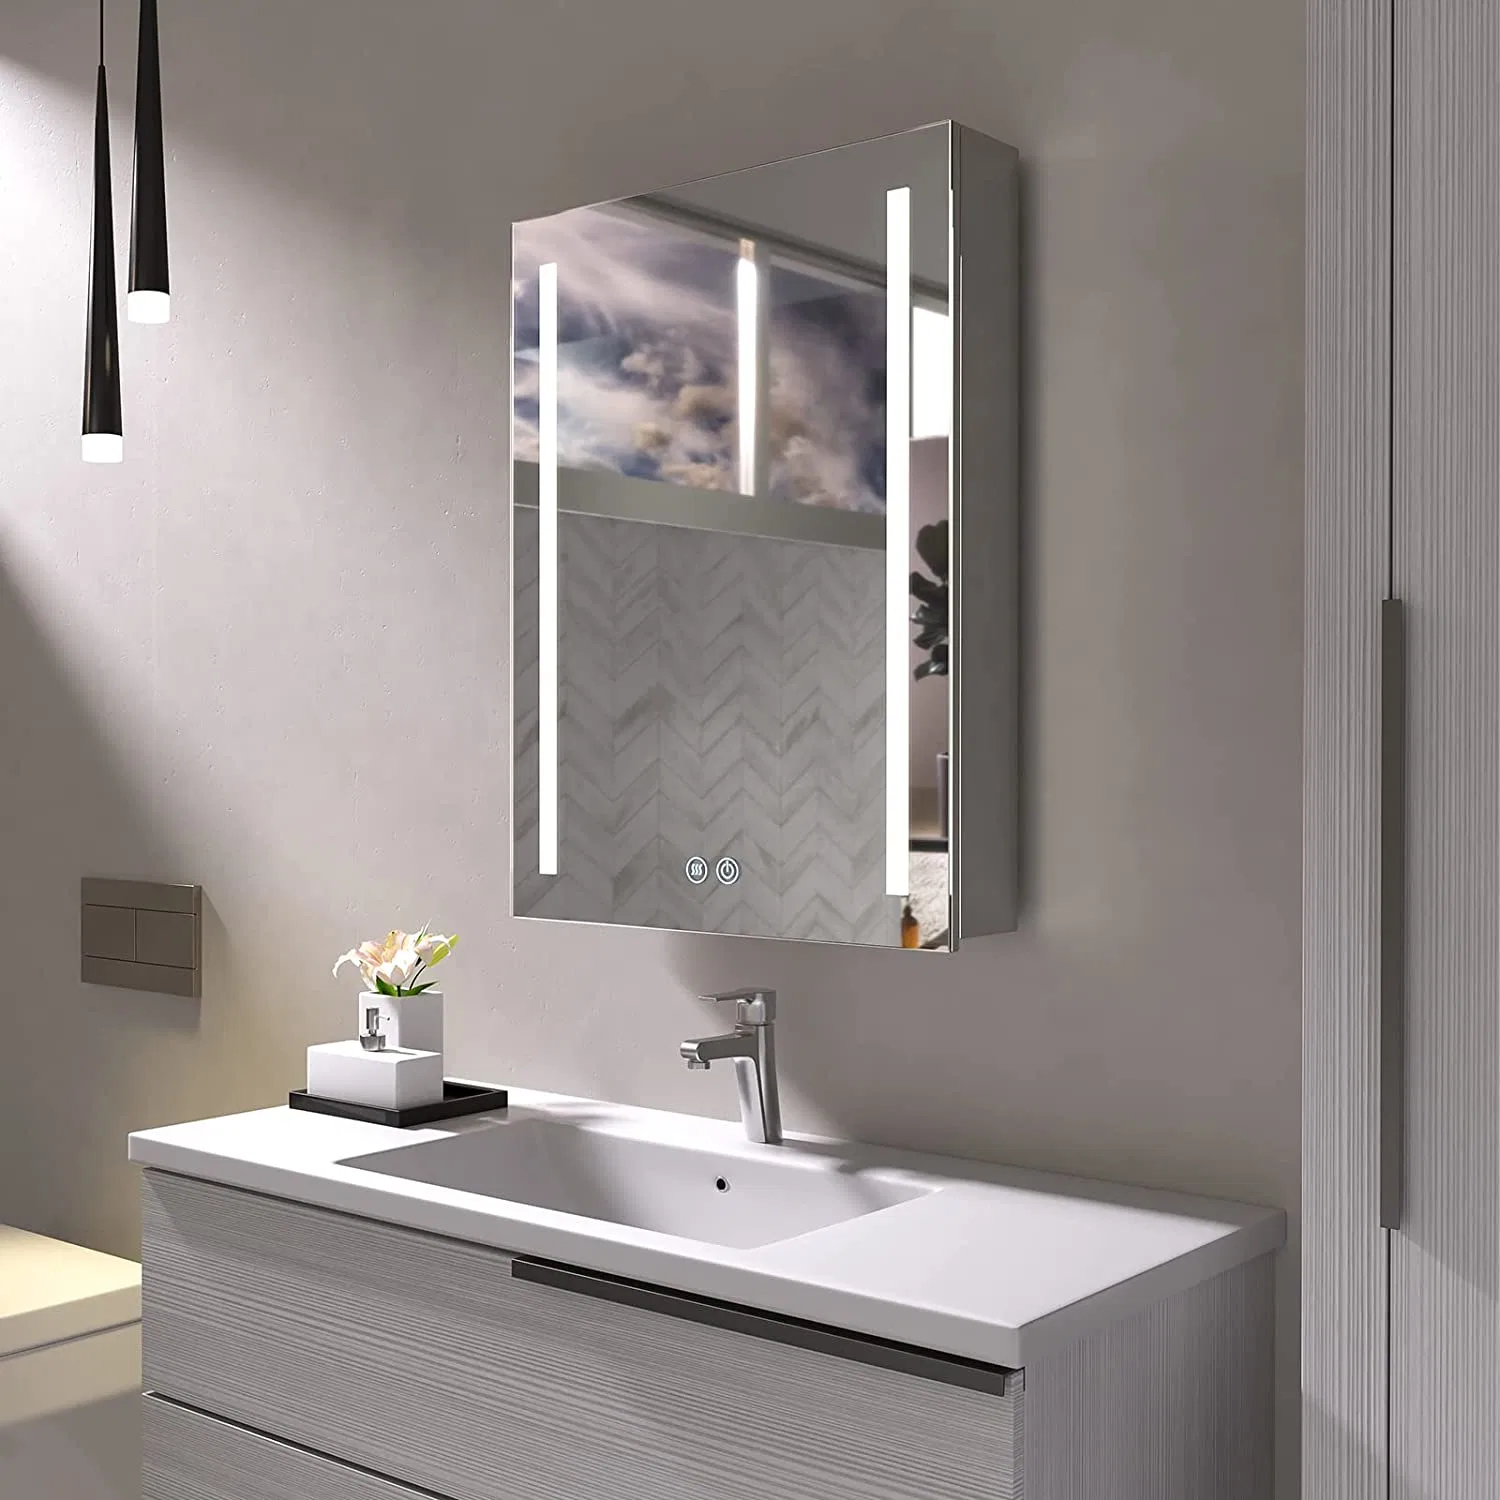 خزائن الحمام الخشبية الألومنيومية المدمجة الحديثة المثبتة على الحائط من إم دي إف بي في سي مع مرآة مضاءة وخزانة دواء مرآة للحمام.